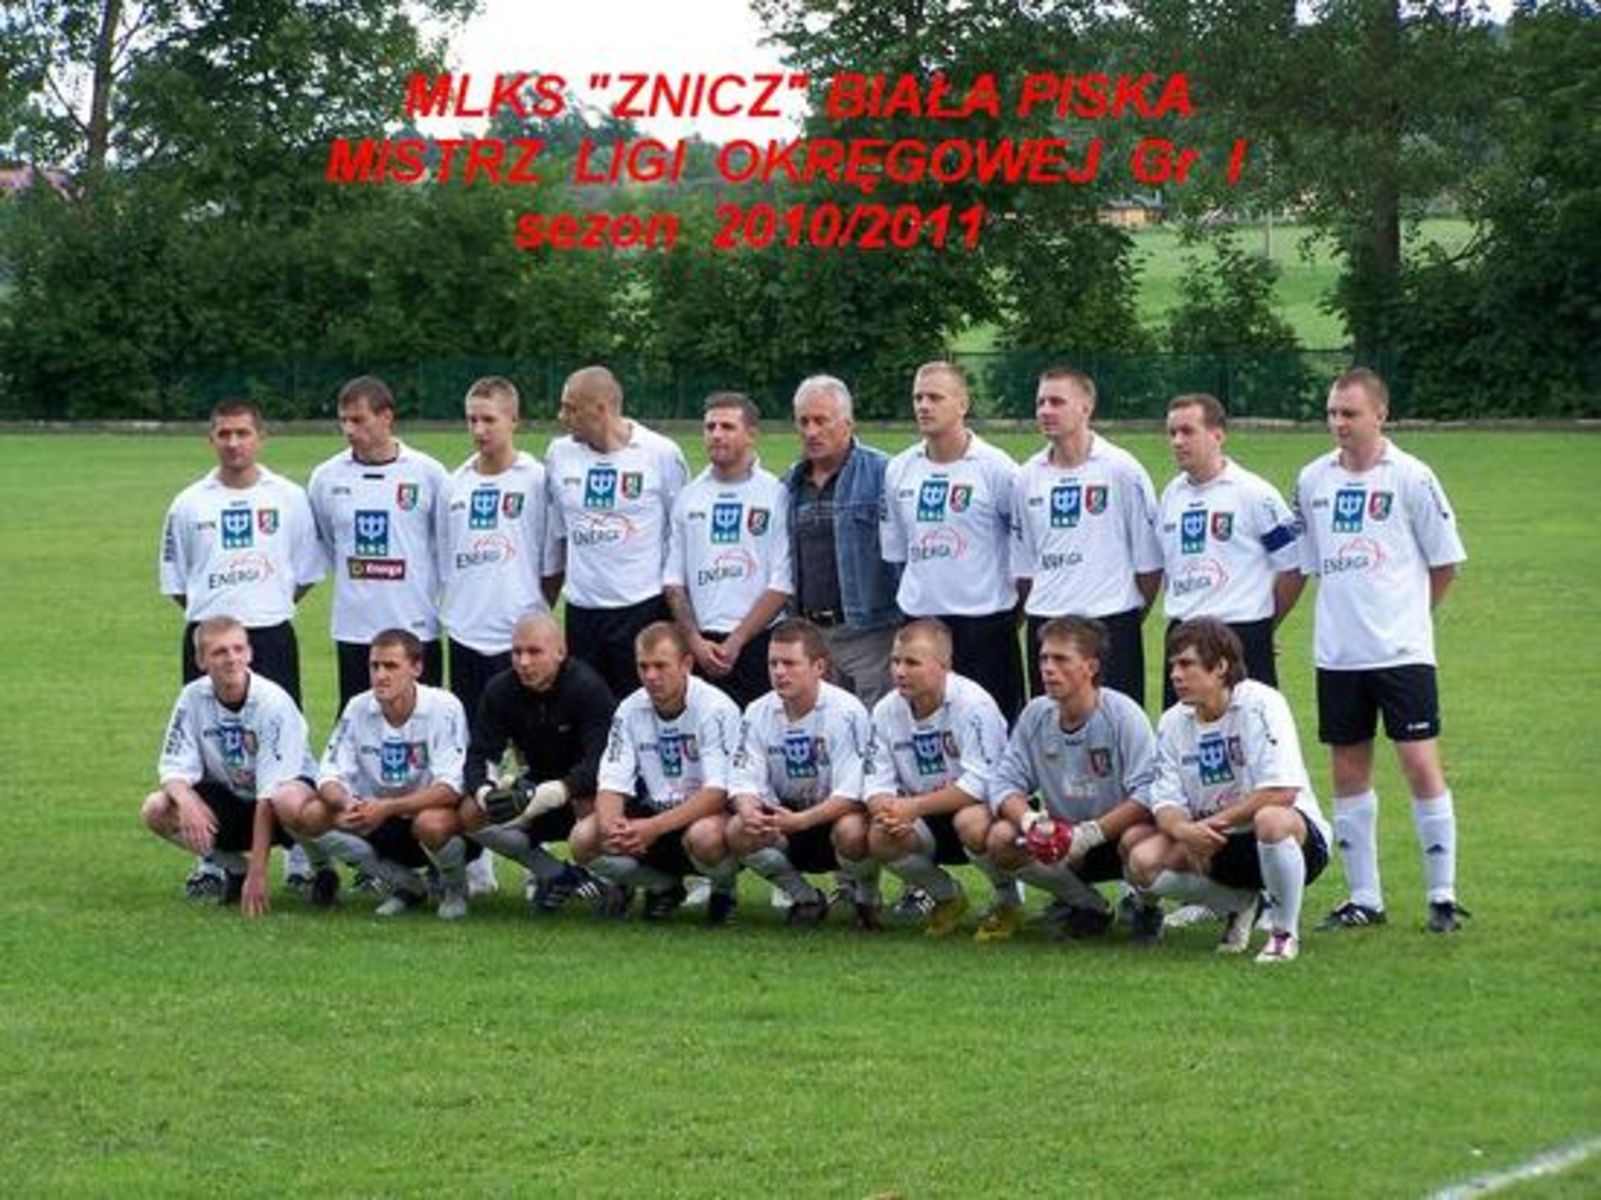 Fot. znicz1954bialapiska.futbolowo.pl